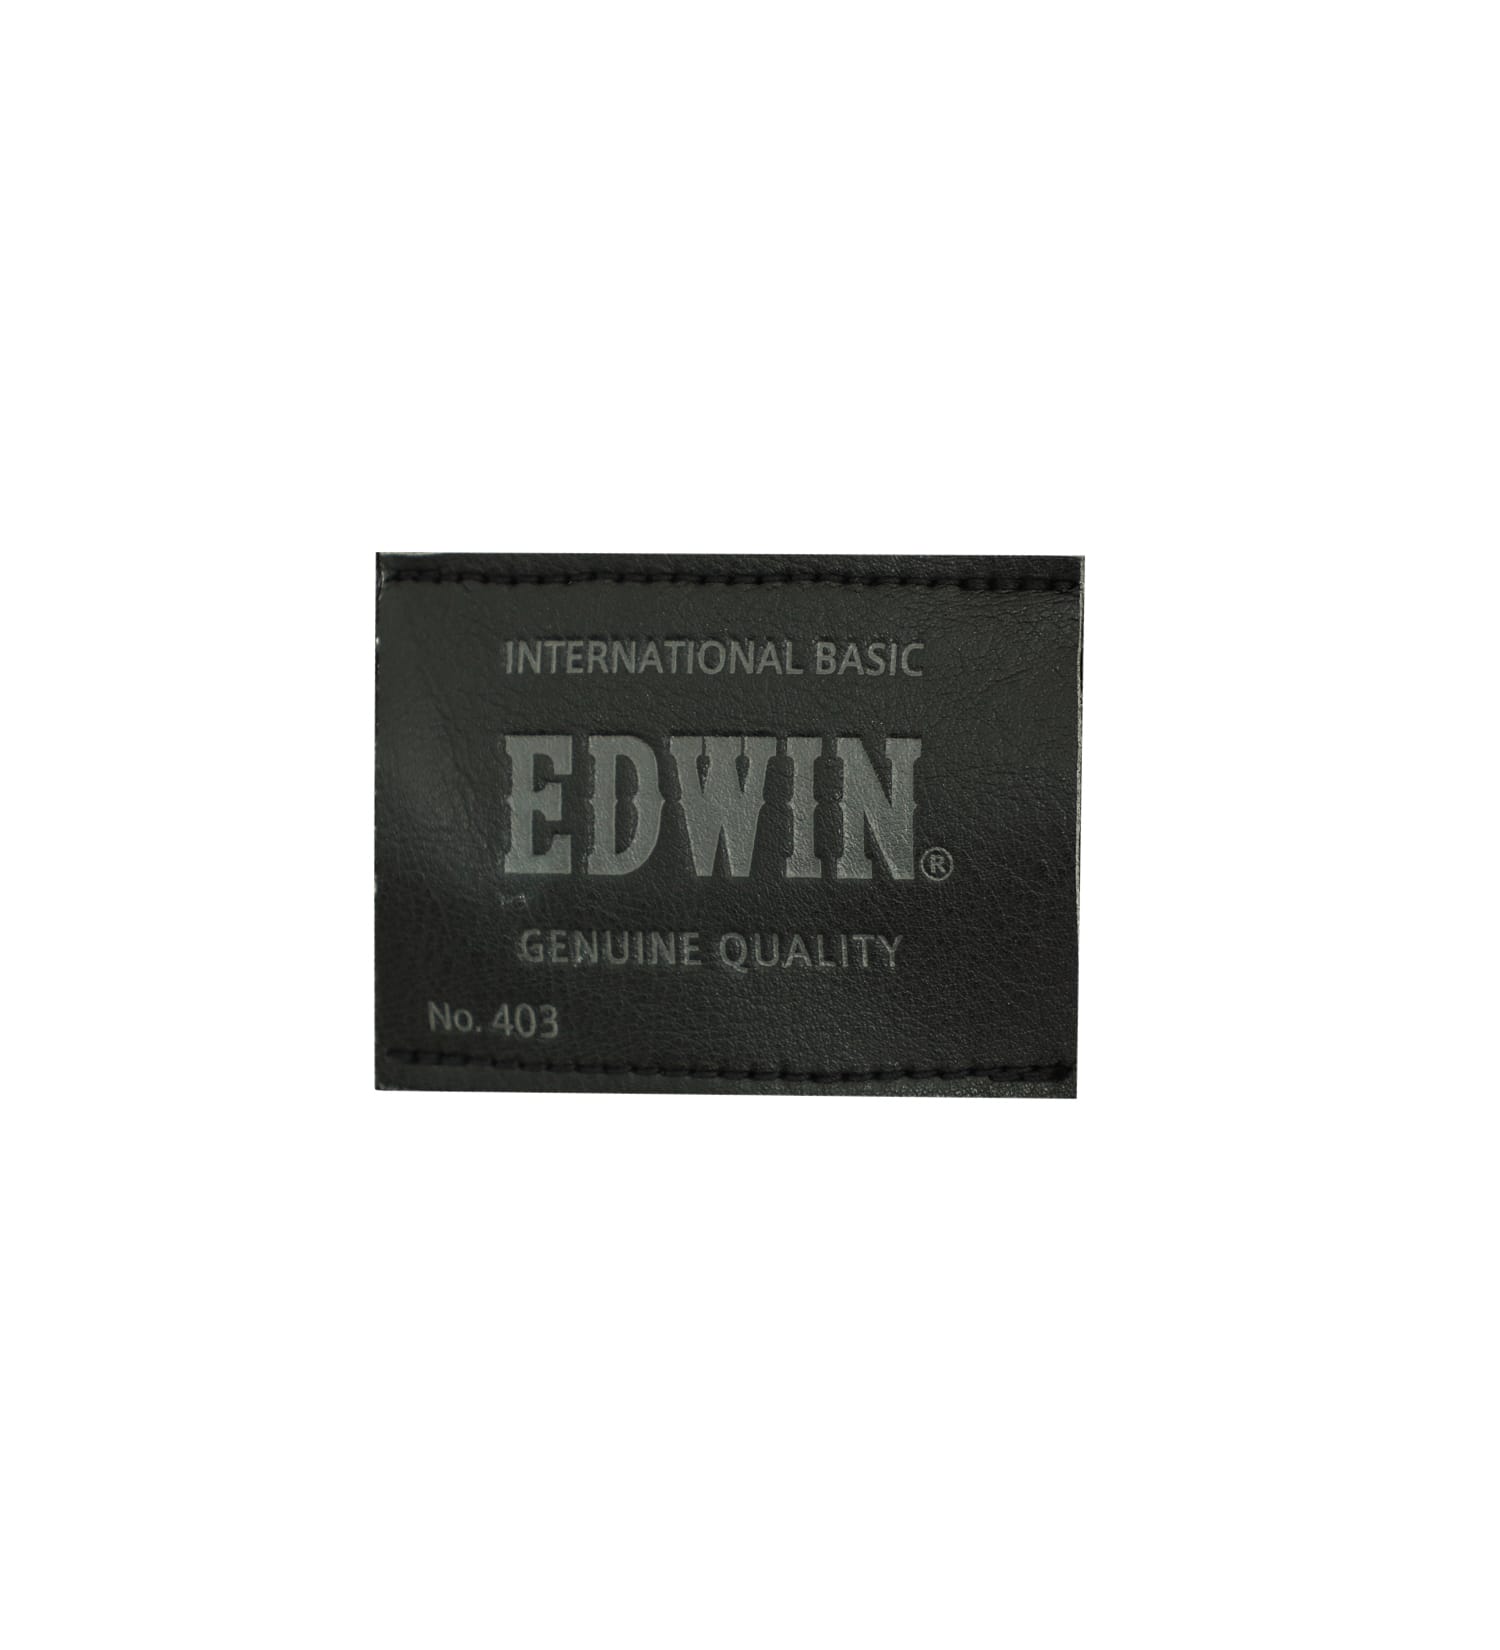 EDWIN(エドウイン)の【SALE】403 WARM FLEX スラッシュポケット ストレート[暖](チェック)|パンツ/パンツ/メンズ|ブラウン系その他